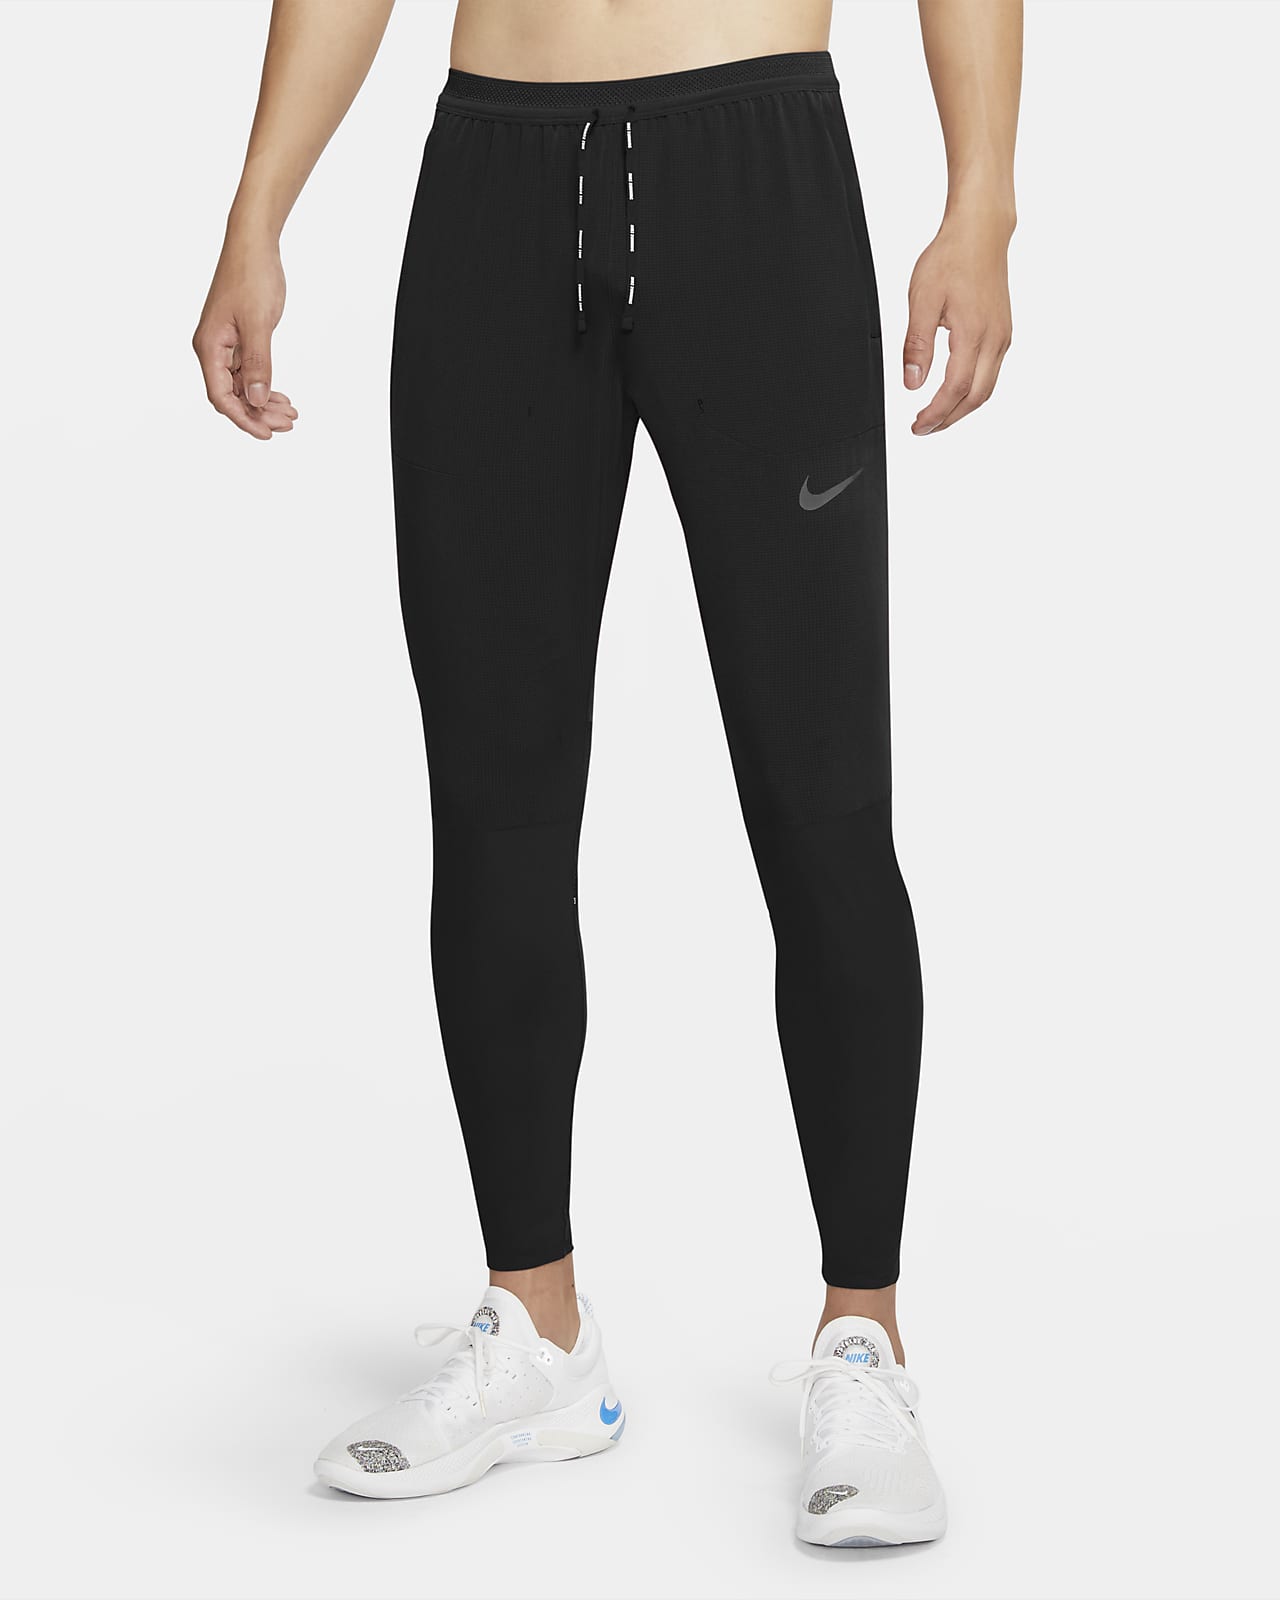 Мужские беговые брюки Nike Swift. Nike RU